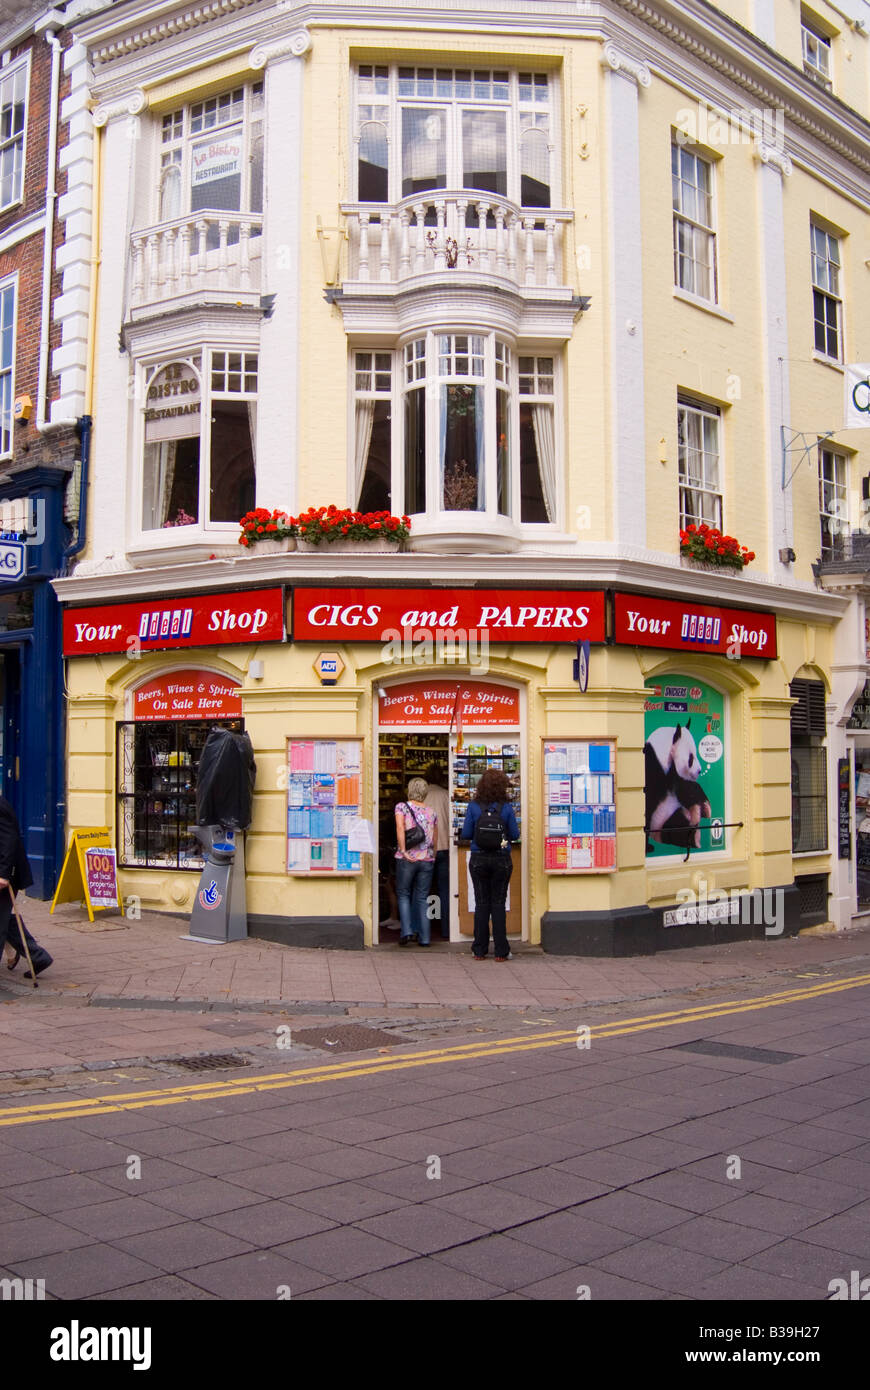 Ihr idealer shop Verkauf Cigs und Papiere, Alkohol, Süßigkeiten usw. das Stadtzentrum von Norwich, Norfolk, Großbritannien Stockfoto